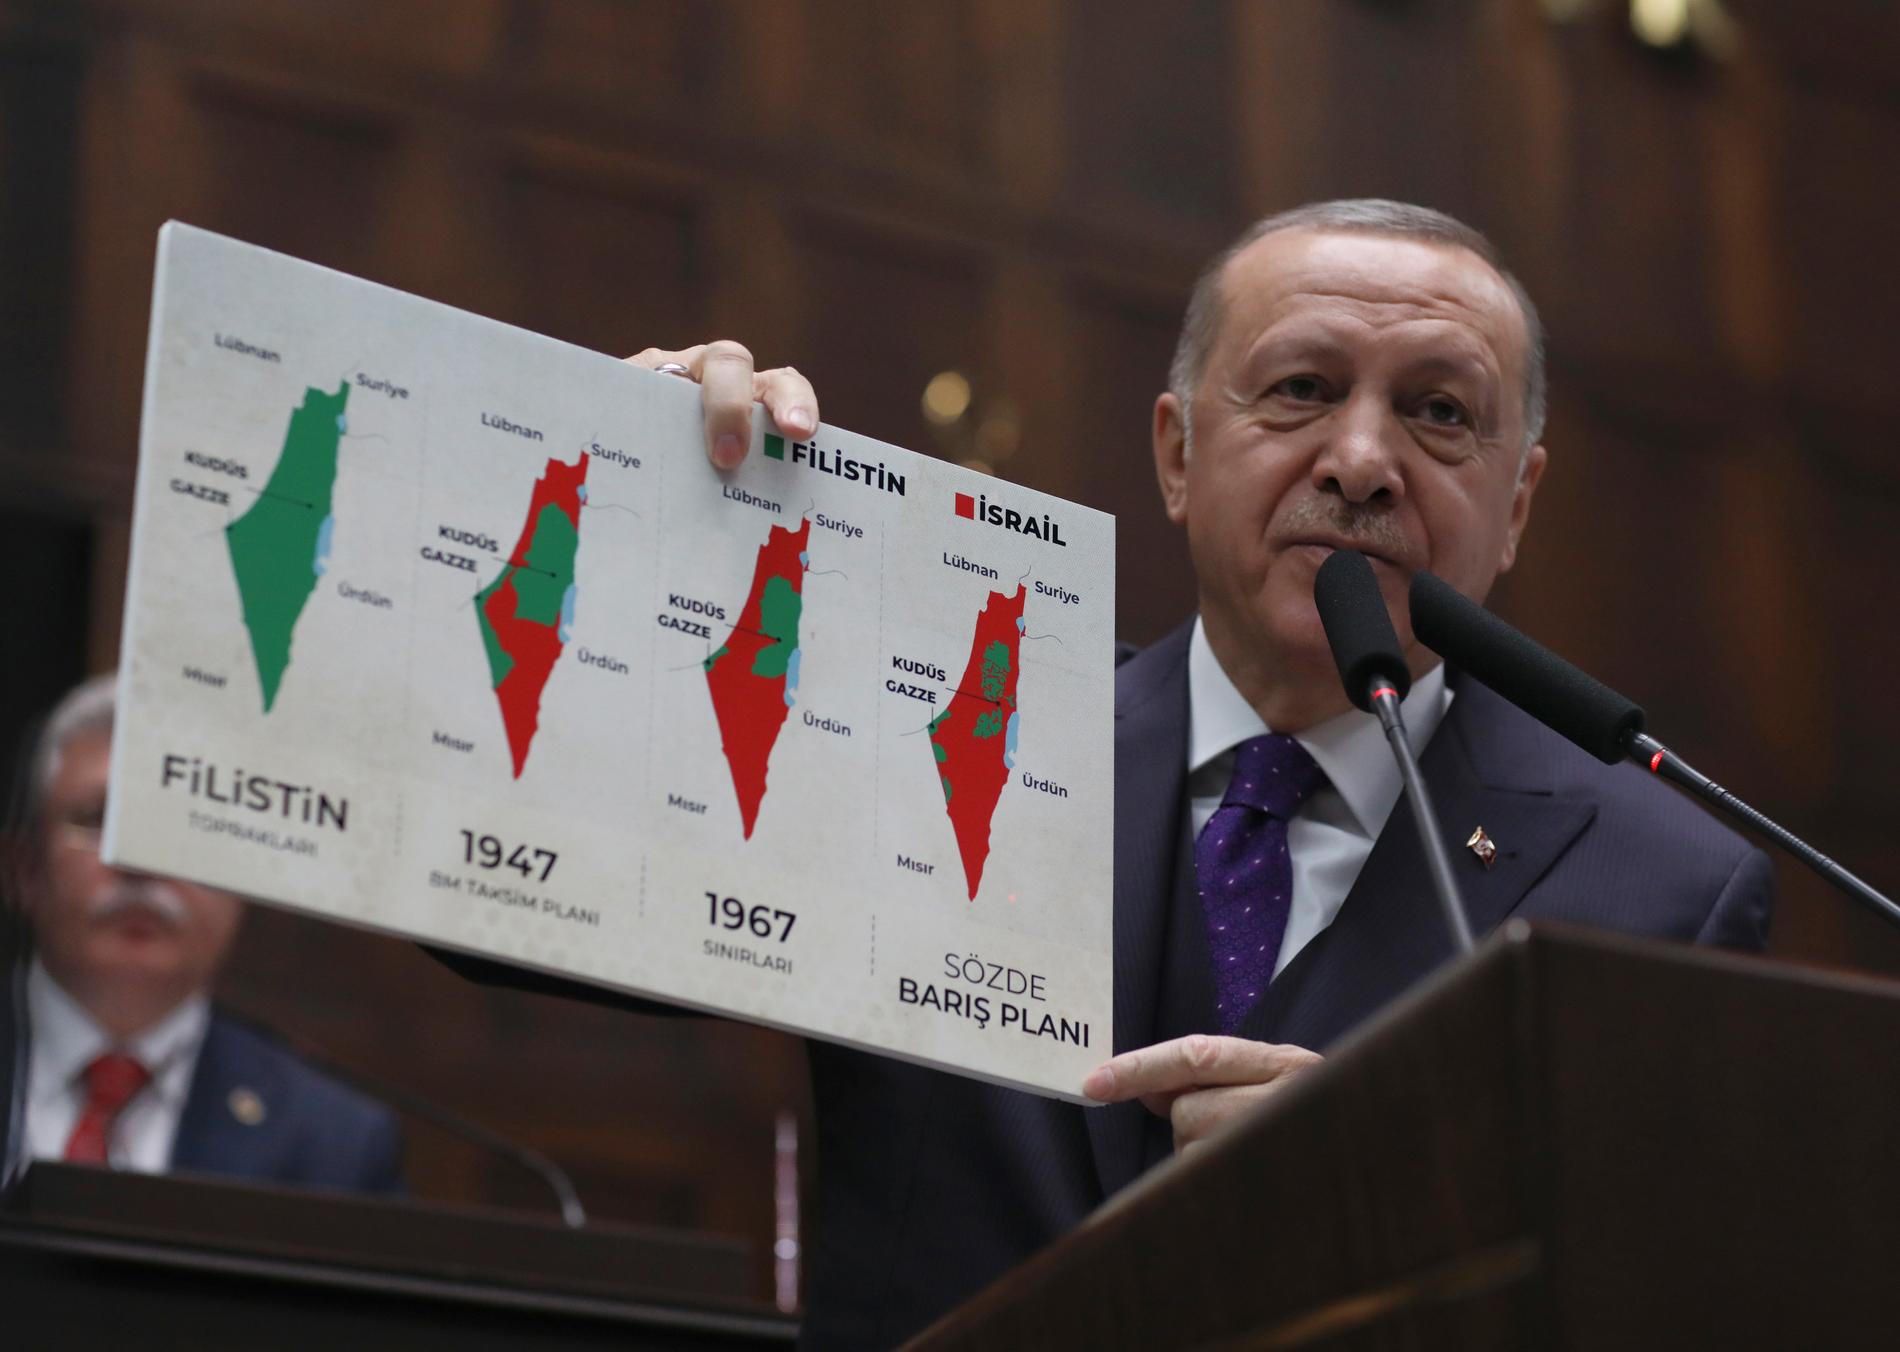 En illustration av de starka åsikterna kring Israel och de palestinska områdena: Turkiets president Recep Tayyip Erdogan håller upp kartor med det historiska Palestina, delningsplanen 1947, läget 1967 och i dag. Bilden togs i början av förra året, då USA lade fram ett nytt försök till fredsplan.